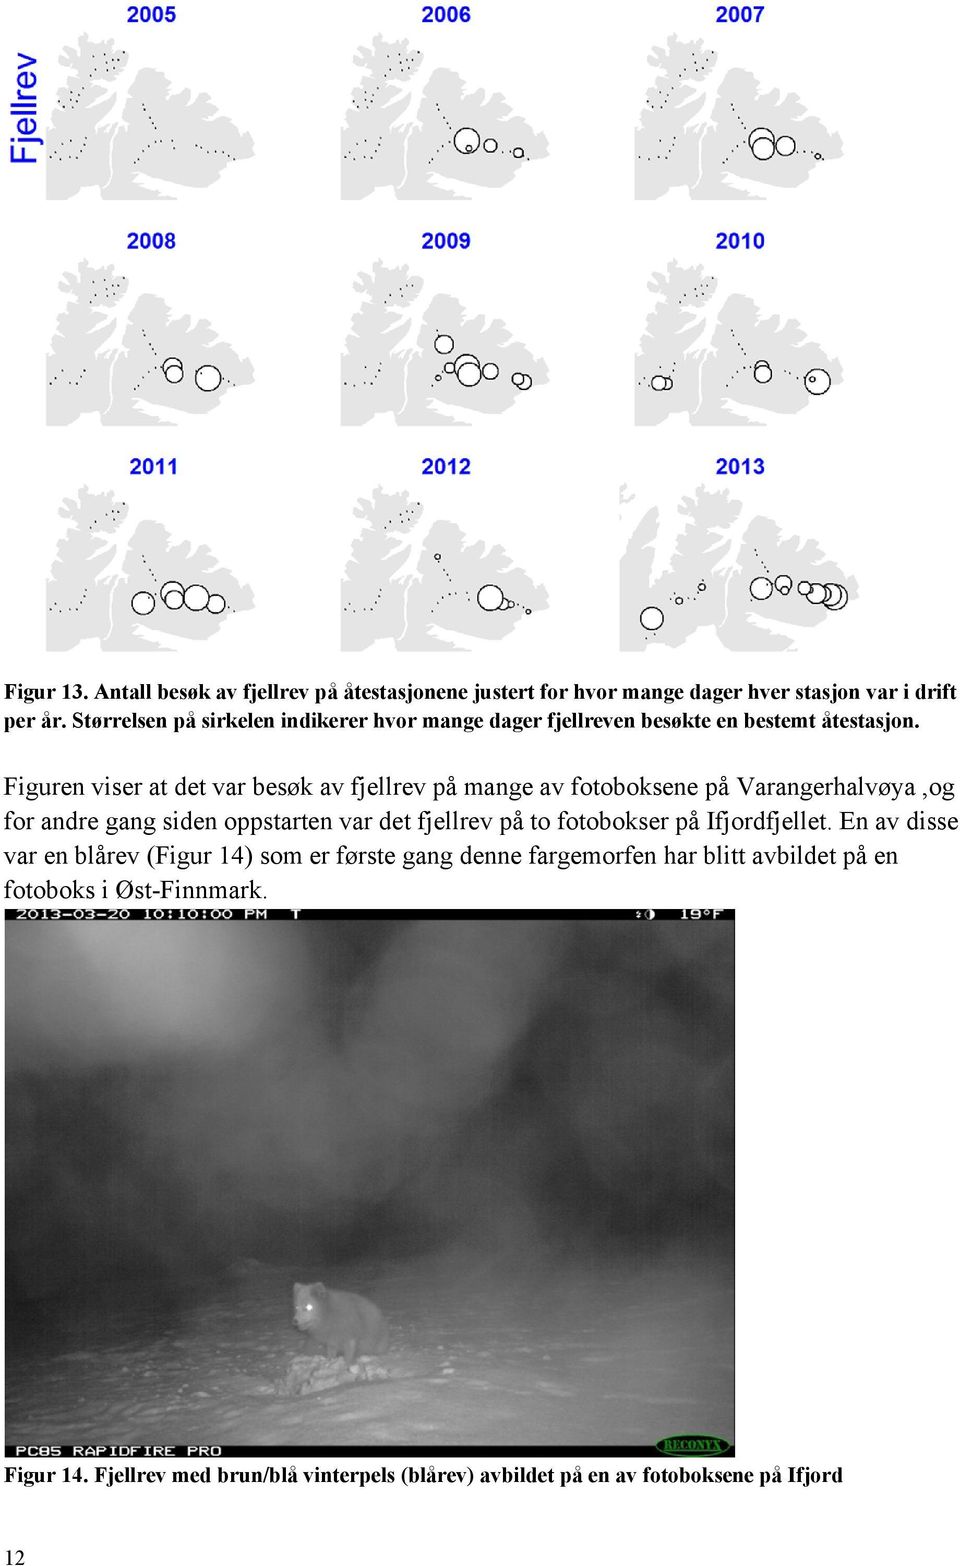 Figuren viser at det var besøk av fjellrev på mange av fotoboksene på Varangerhalvøya,og for andre gang siden oppstarten var det fjellrev på to